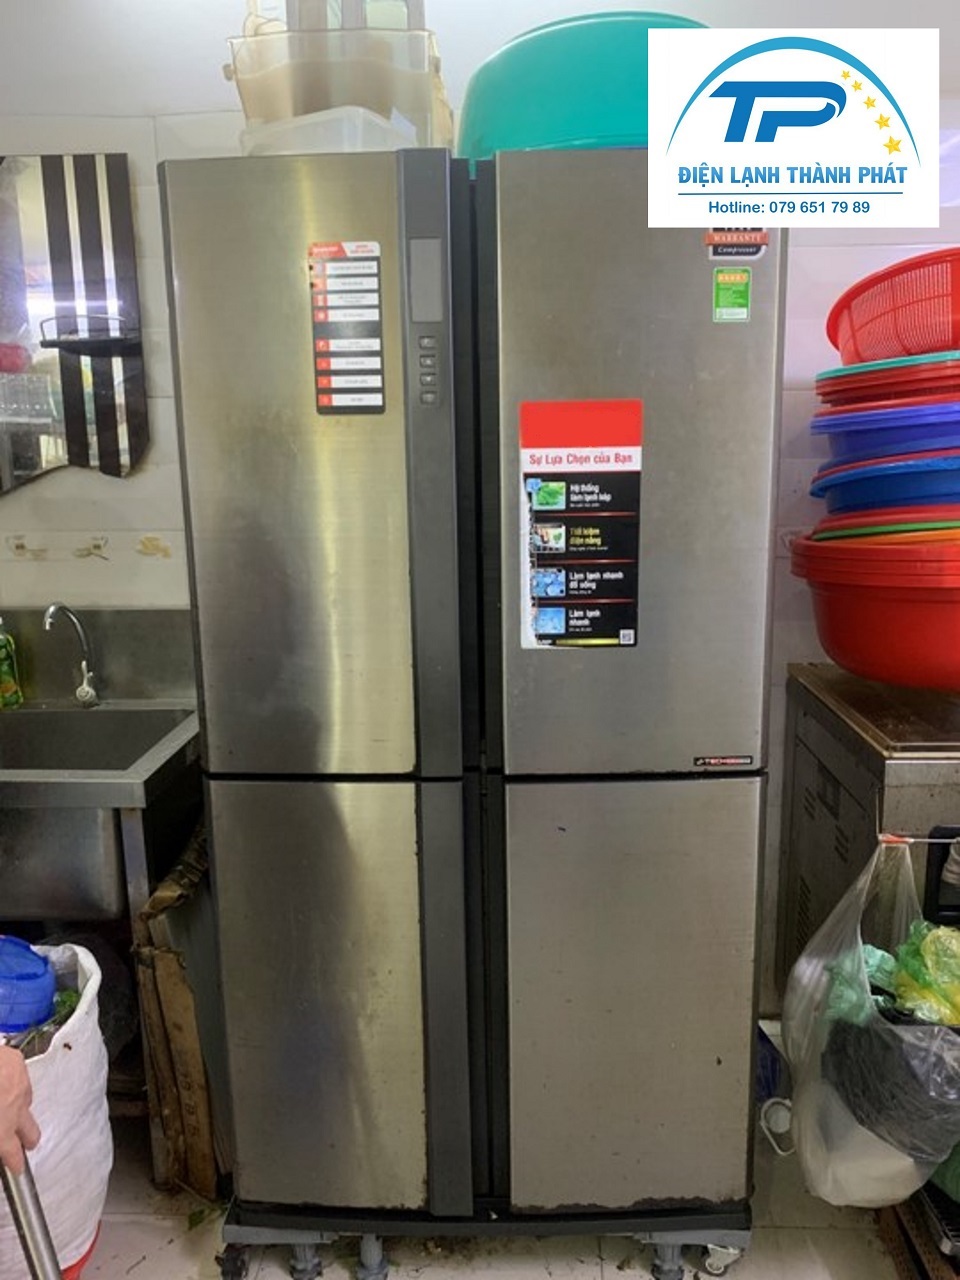 Điện lạnh Thành Phát chuyên nhận sửa chữa tủ lạnh với thái độ phục vụ tận tâm, uy tín.